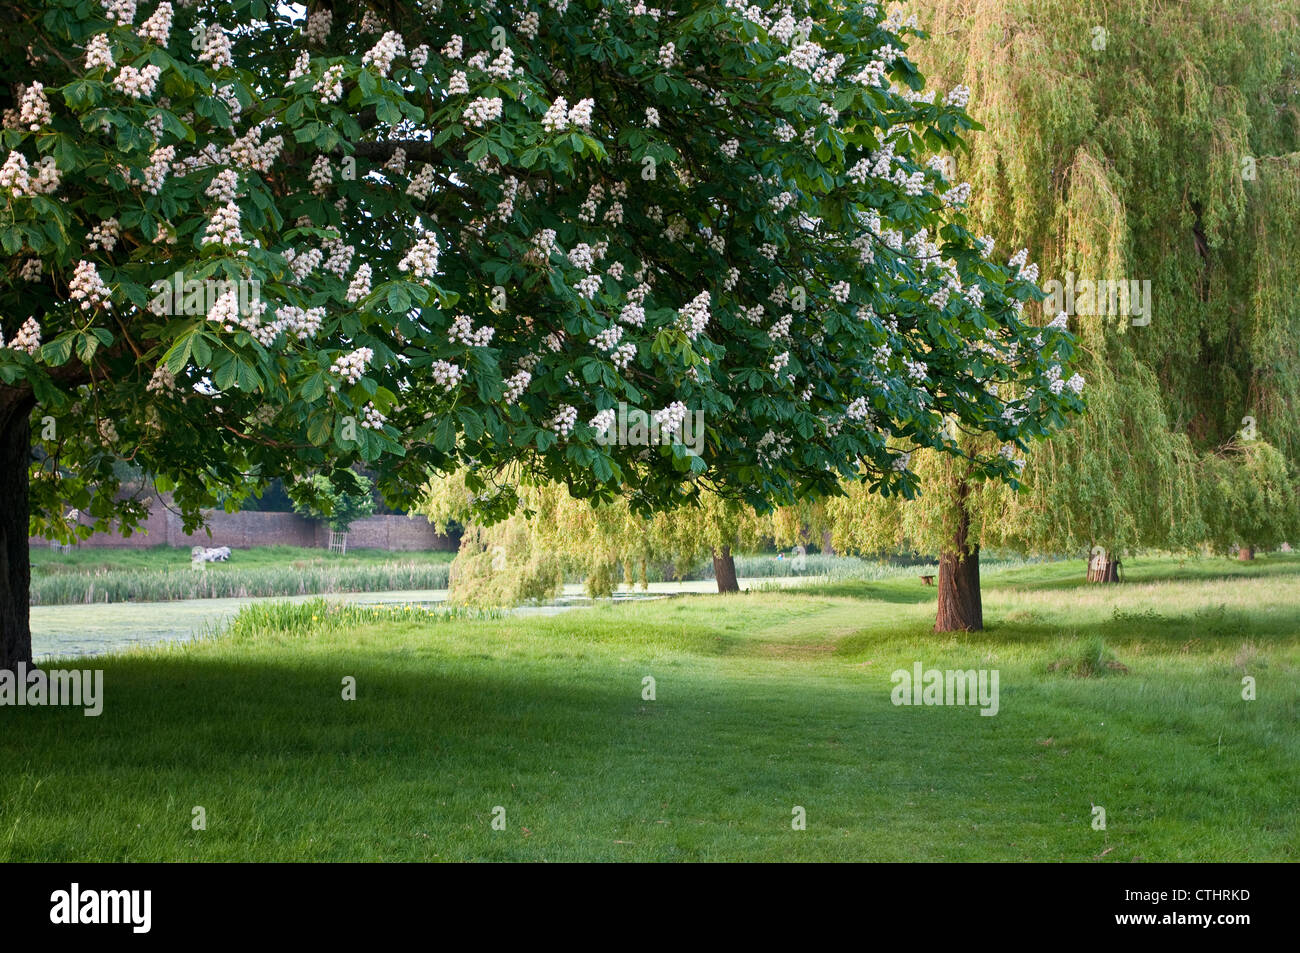 Le marronnier d'arbre en fleur et arbres, Home Park, Hampton Wick, Surrey, England, UK Banque D'Images